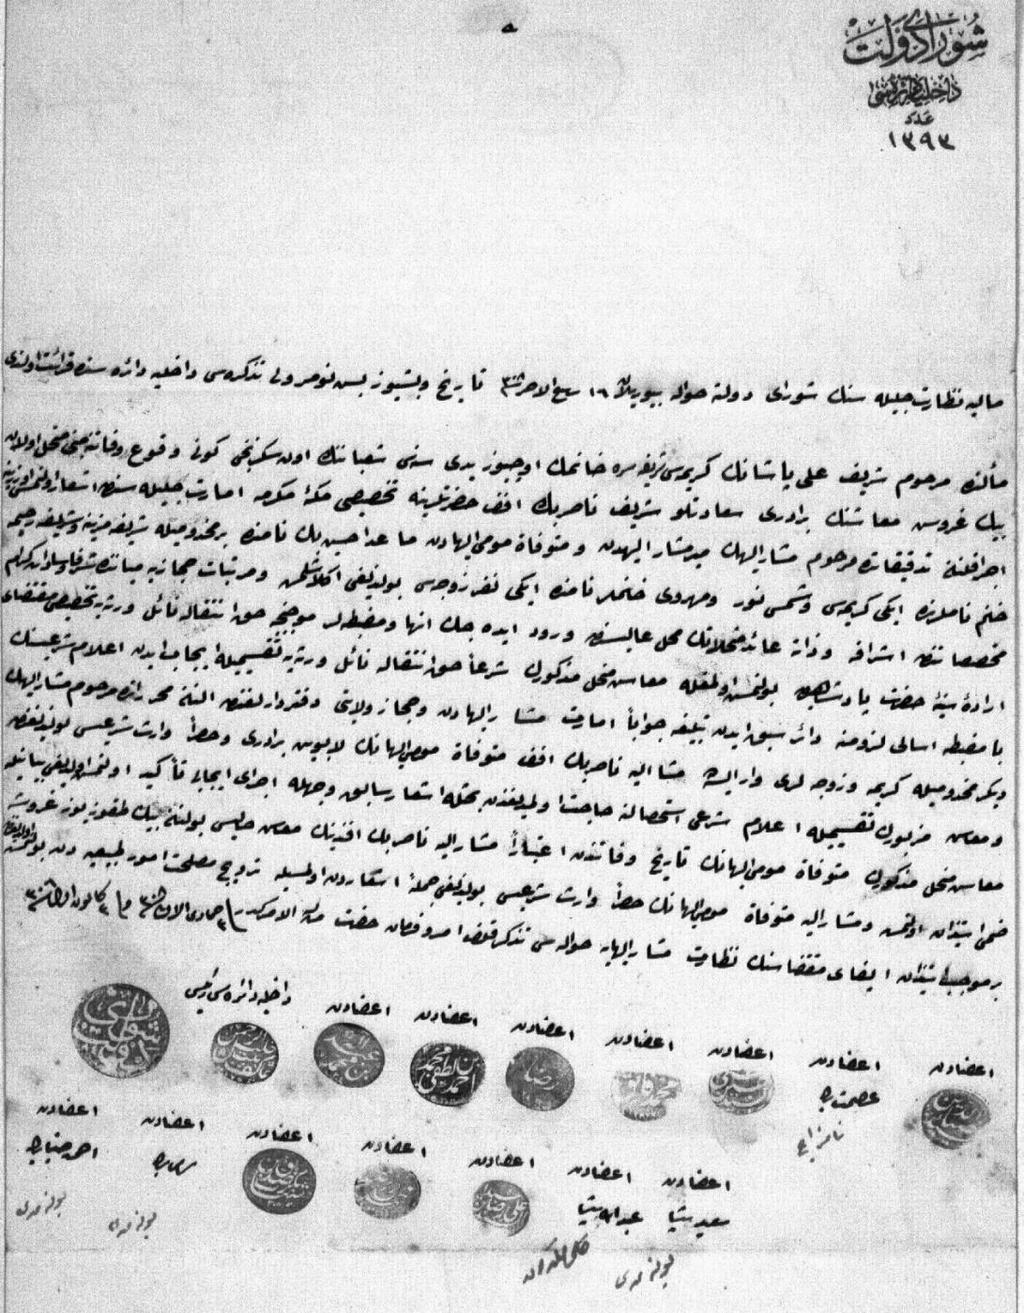 Hû Şûrâ-yı Devlet Dahiliye Dairesi / Aded 1393 Maliye Nezaret-i Celilesi nin Şûrâ-yı Devlet e havale buyurulan 16 Rebiü l-ahir Sene (1)308 tarih ve beşyüzbeş numerolu tezkiresi dahiliye dairesinde